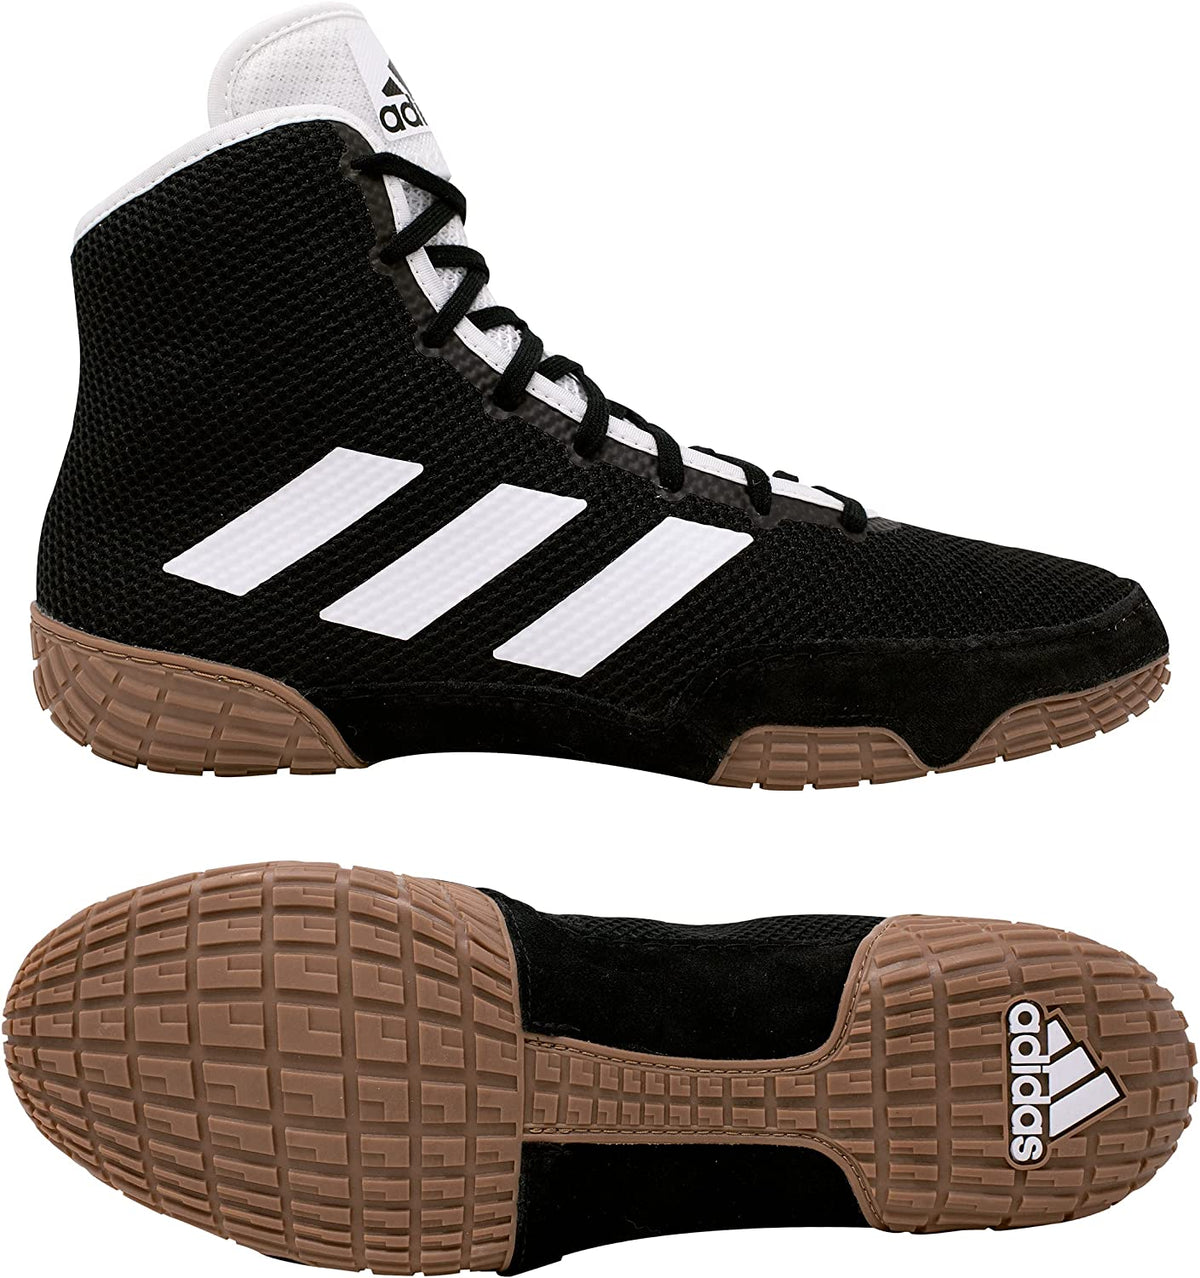 Le scarpe da wrestling Adidas Tech-Fall nel colore nero. Ora al miglior prezzo su Phantom Athletics . Le scarpe da wrestling Adidas sono tra le scarpe più ricercate dai lottatori di tutto il mondo poiché offrono una qualità superiore unita al massimo comfort. La suola robusta fornisce trazione sul tappeto da wrestling. 